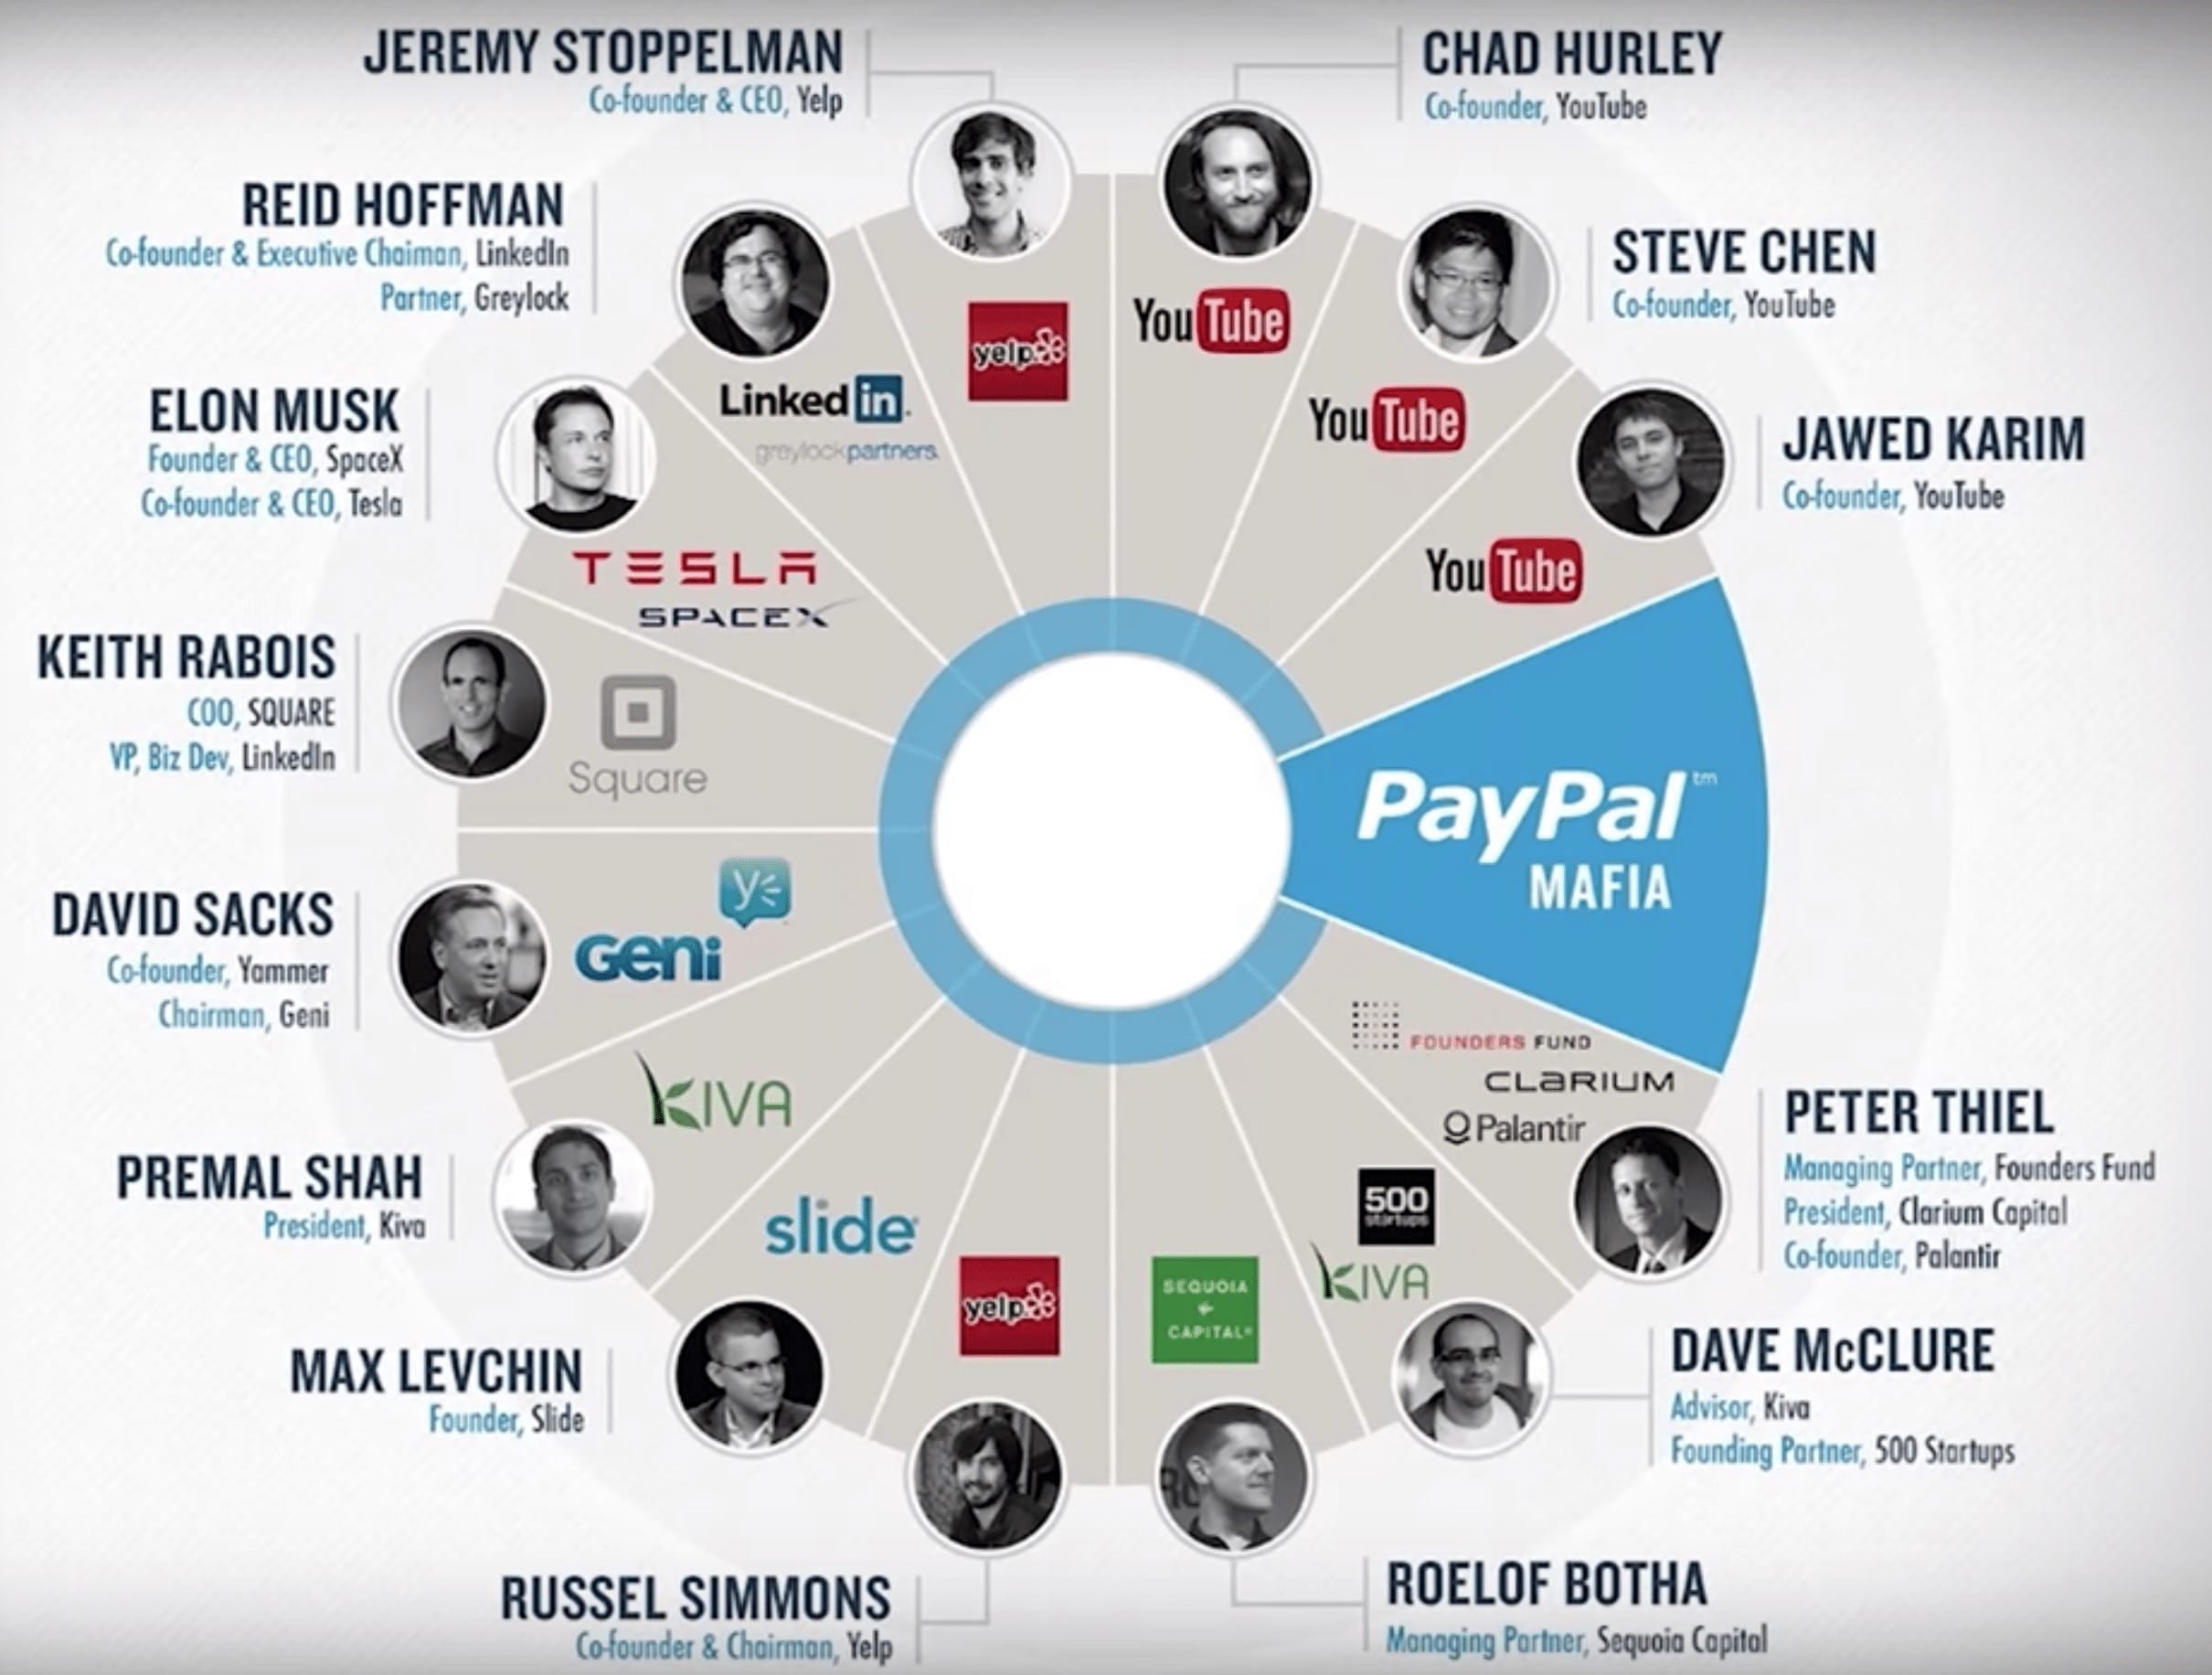 La mafia PayPal